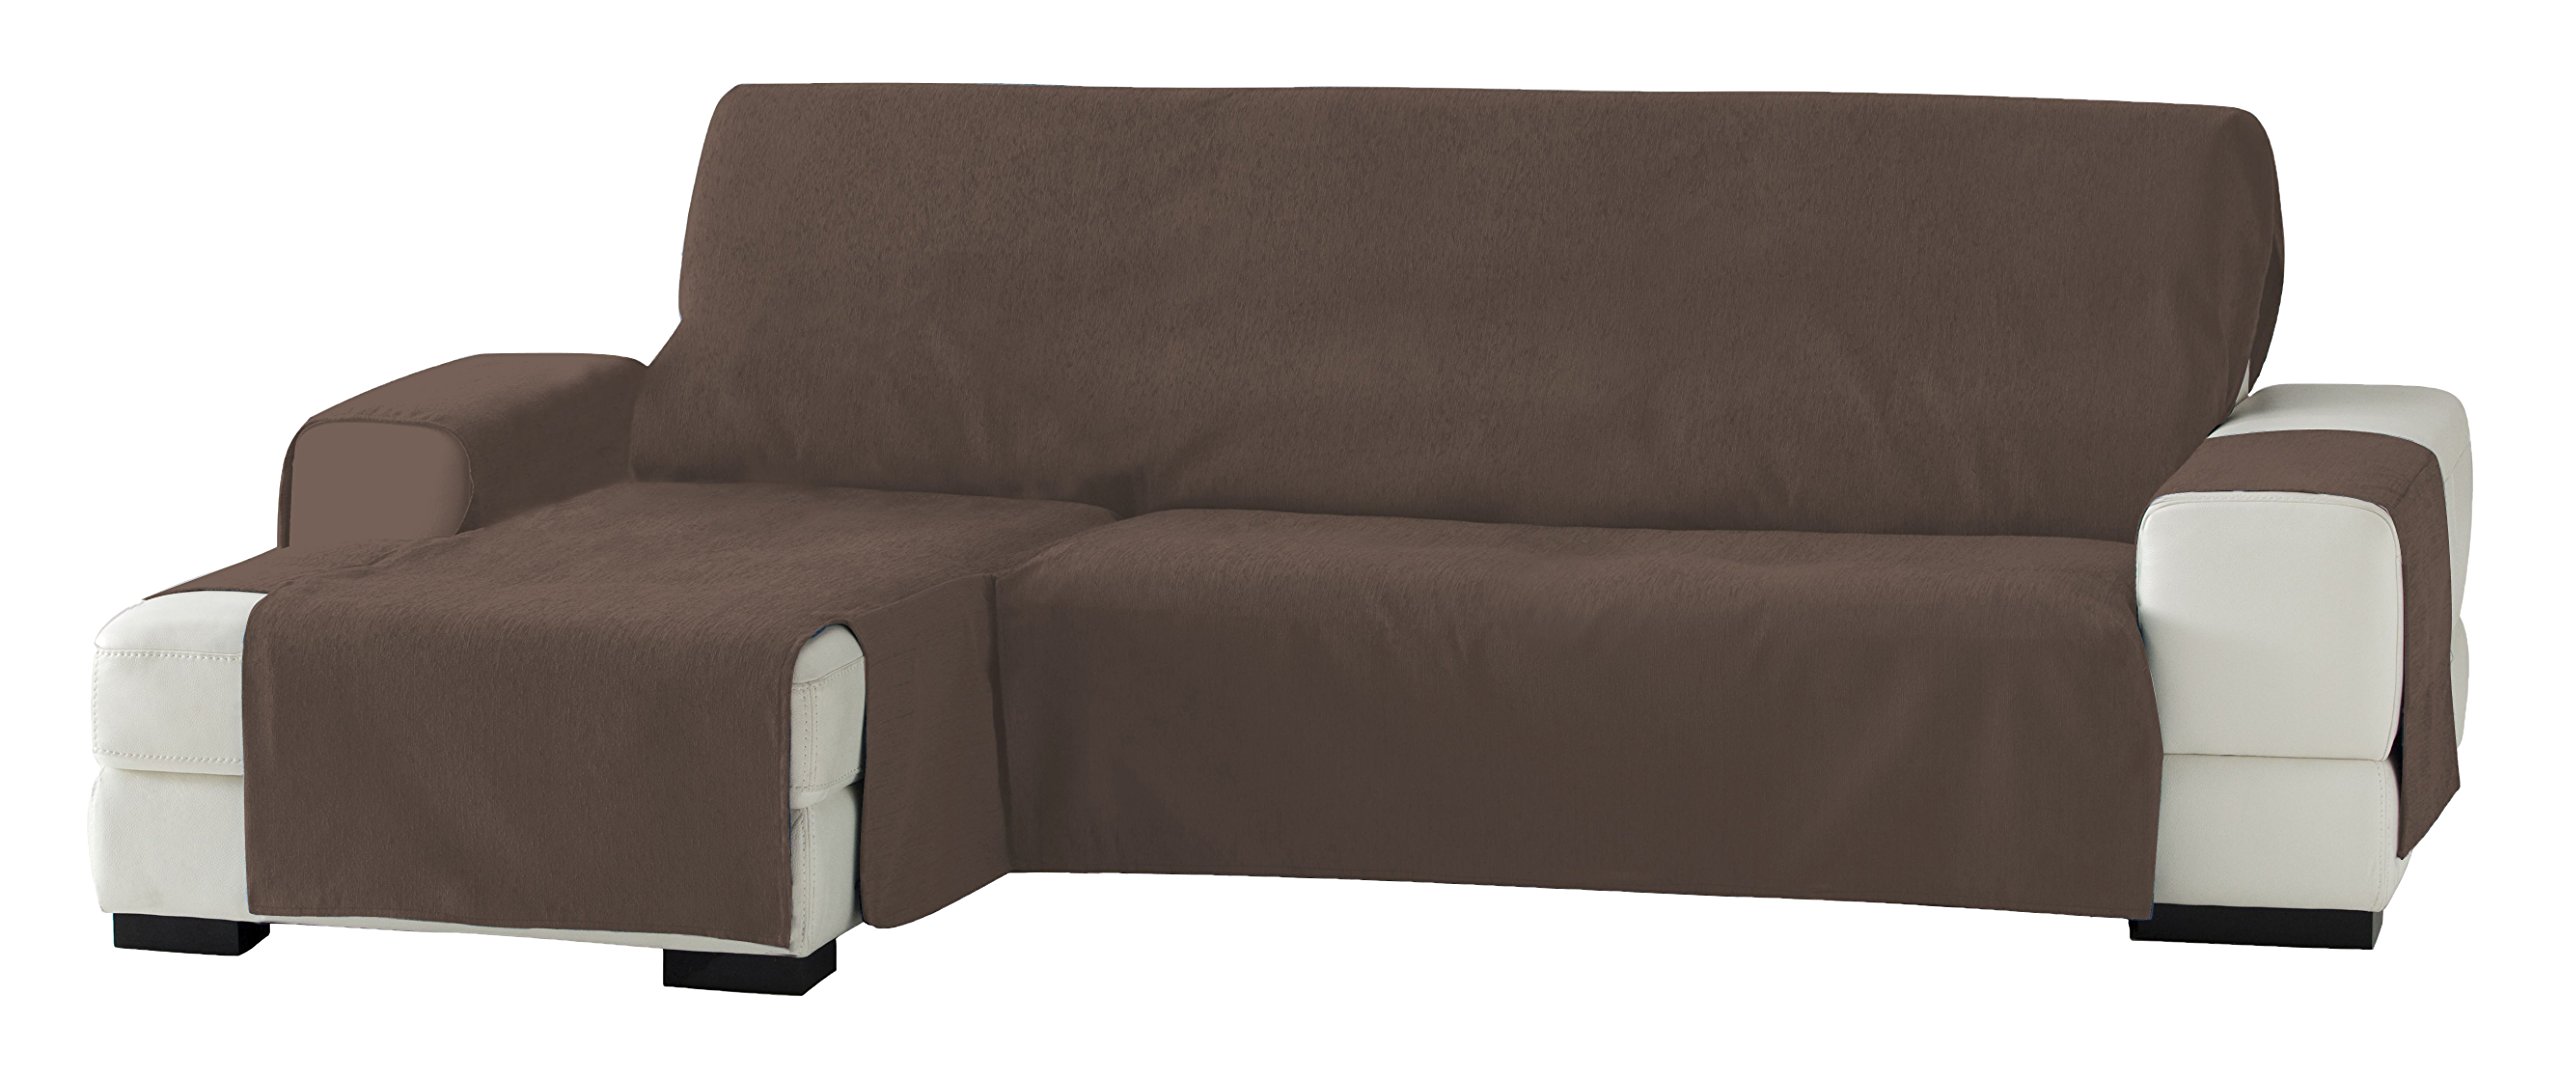 Eysa Zoco Nicht elastisch Sofa überwurf Chaise Longue Links, frontalsicht, Chenille, Braun, 29 x 9 x 37 cm